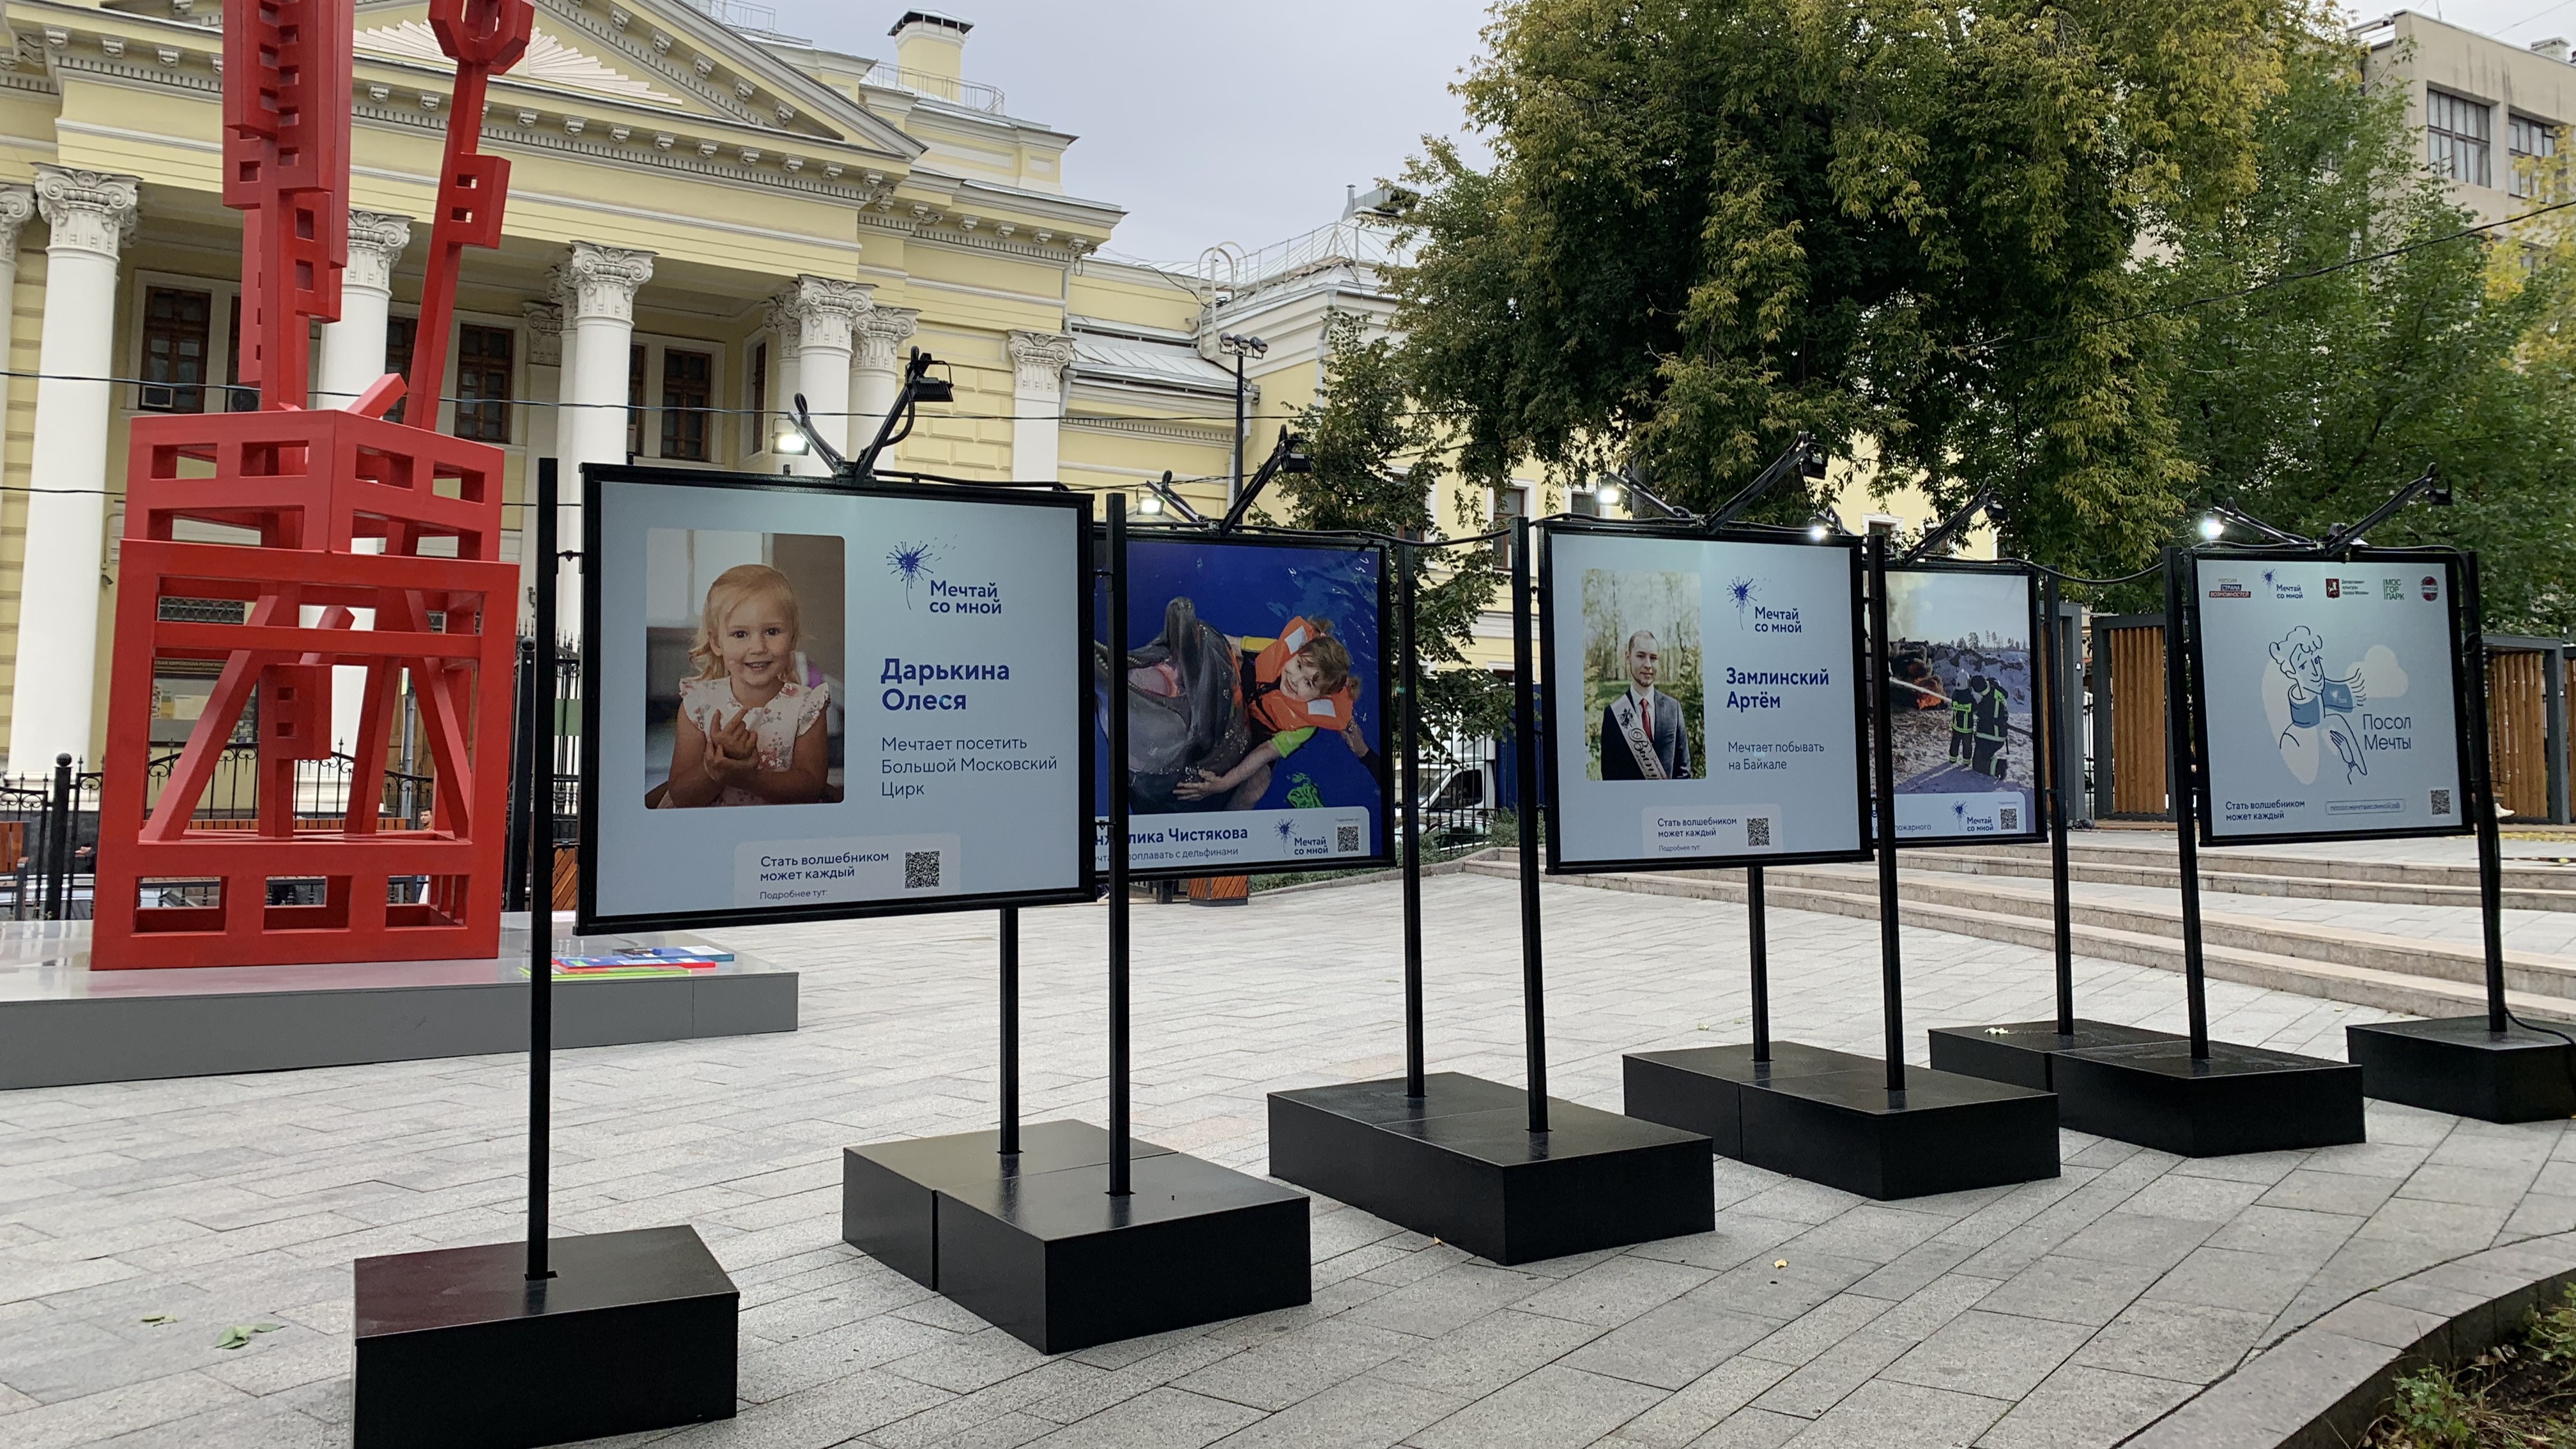 Всероссийский благотворительный проект «Мечтай со мной» запустил фотовыставку «Посол Мечты» в парках Москвы